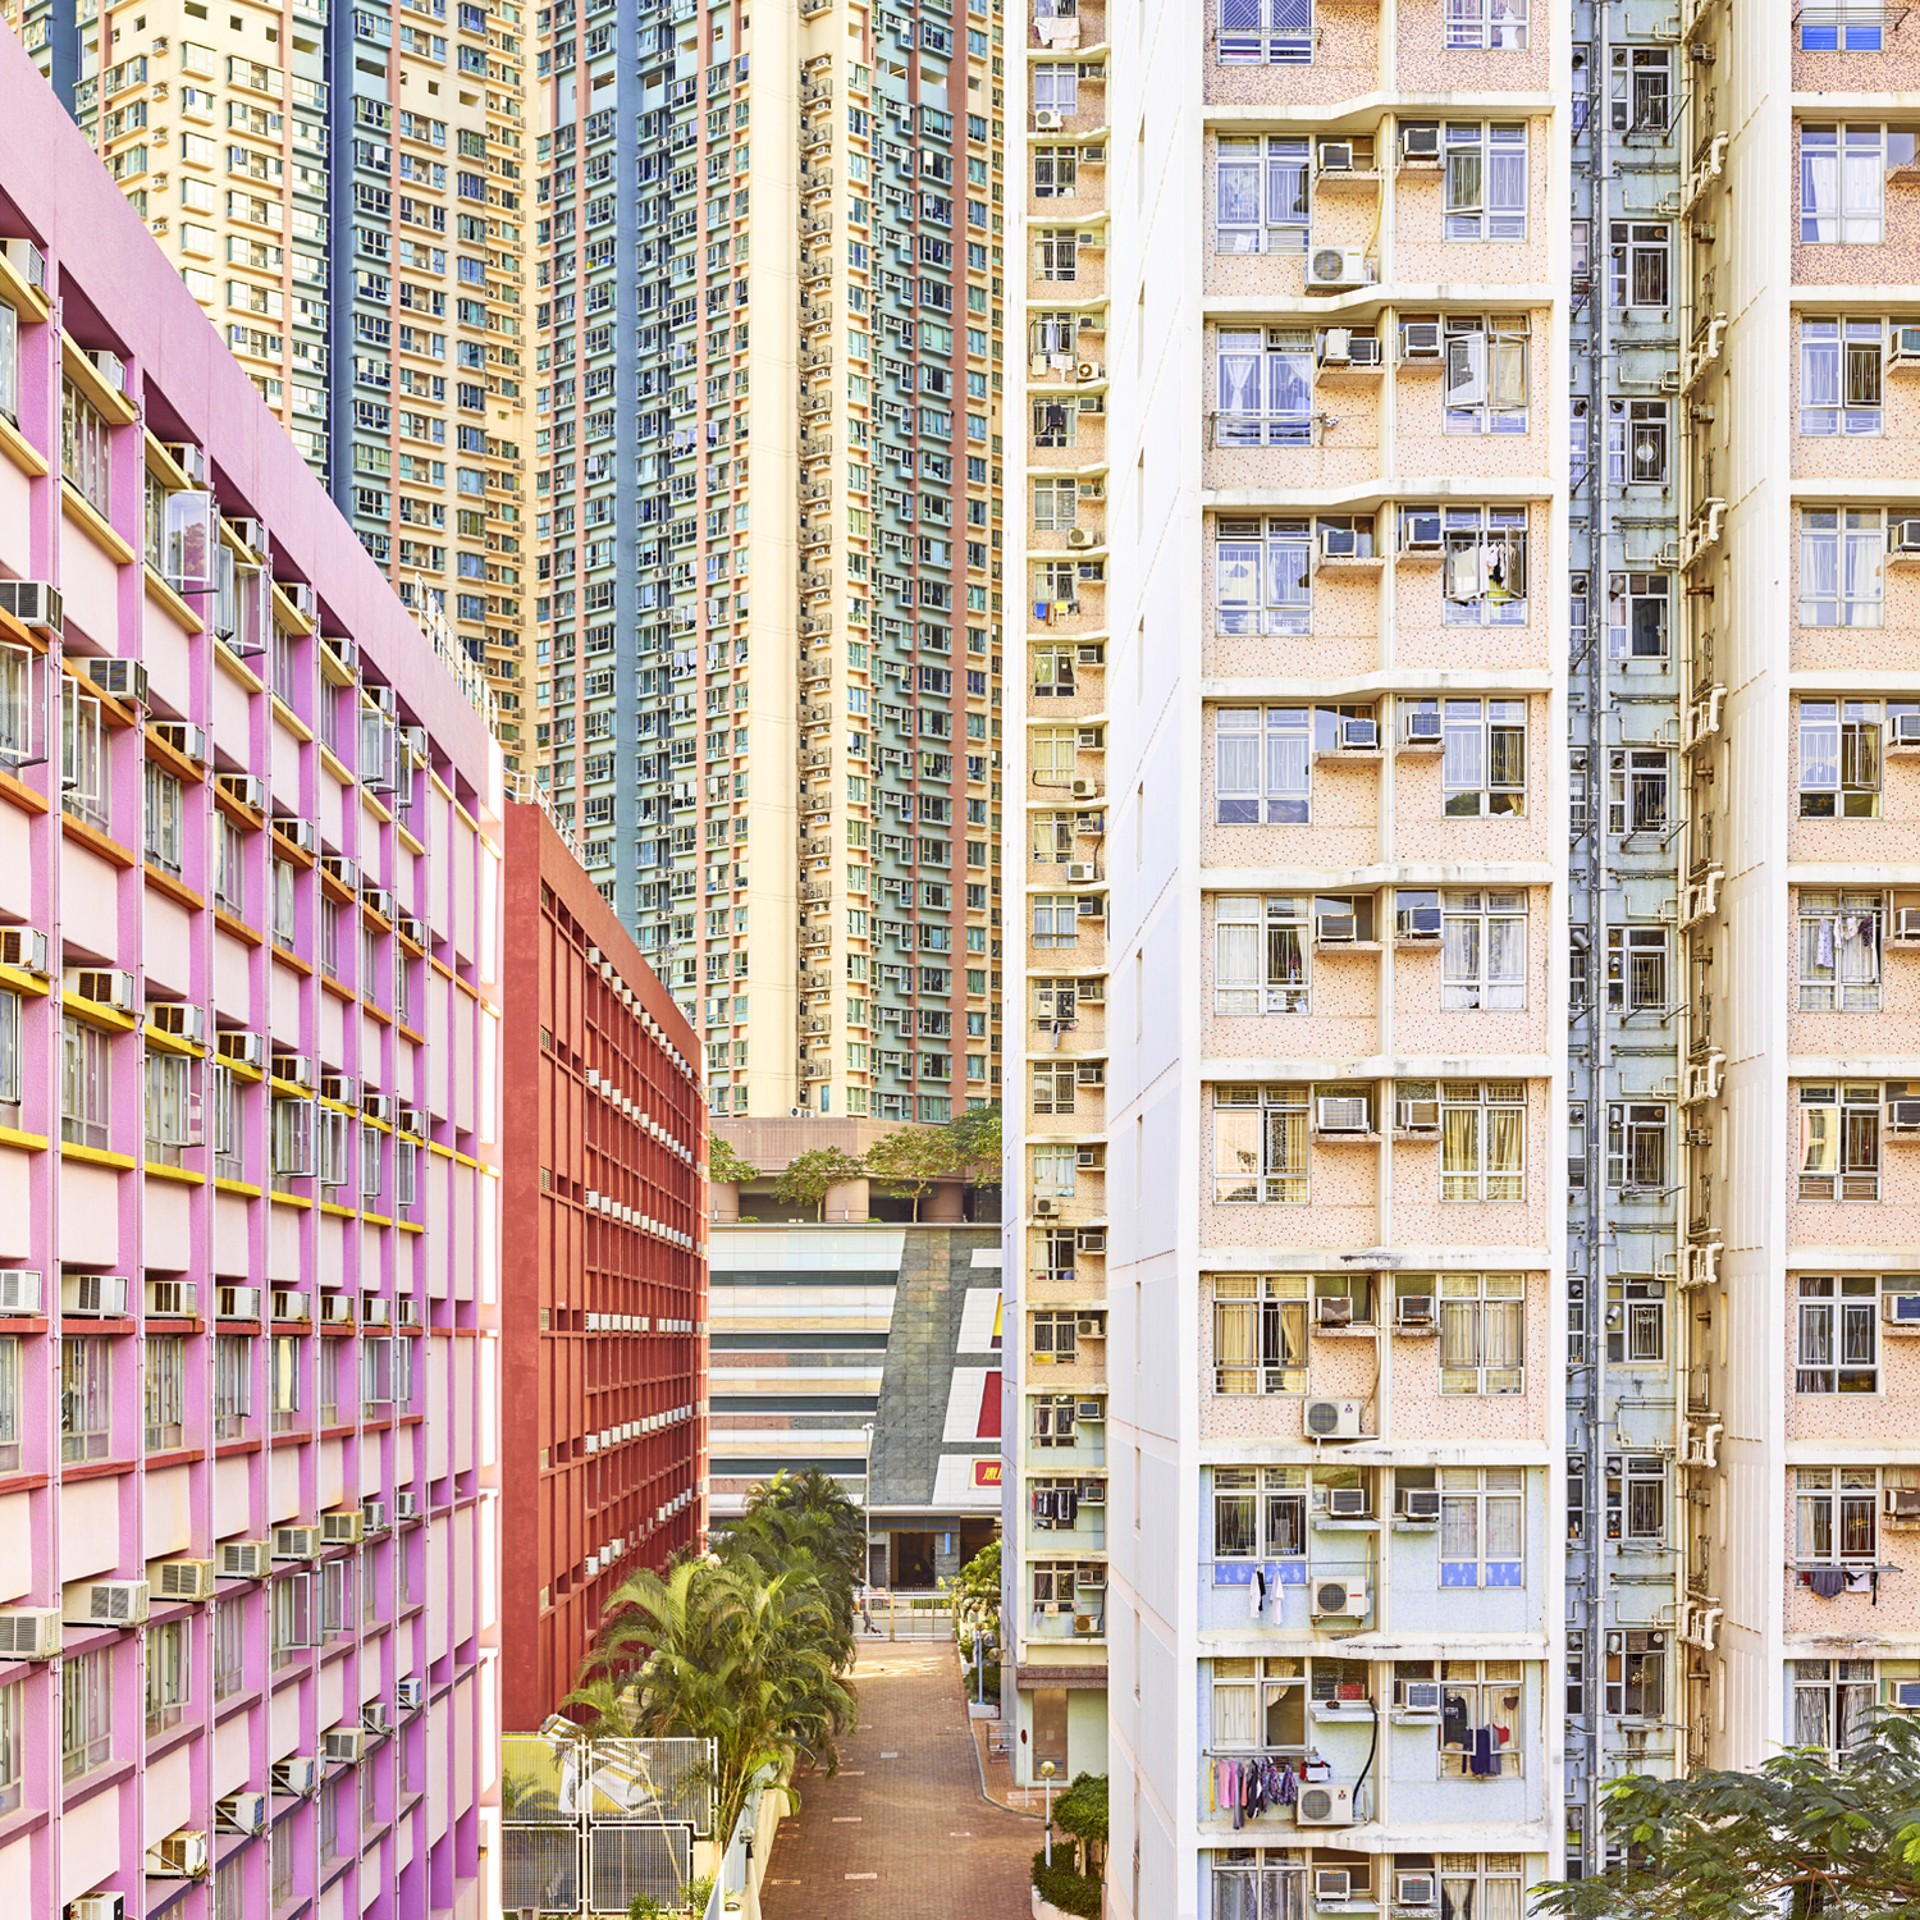 Pastel Facades, Hong Kong by David Burdeny